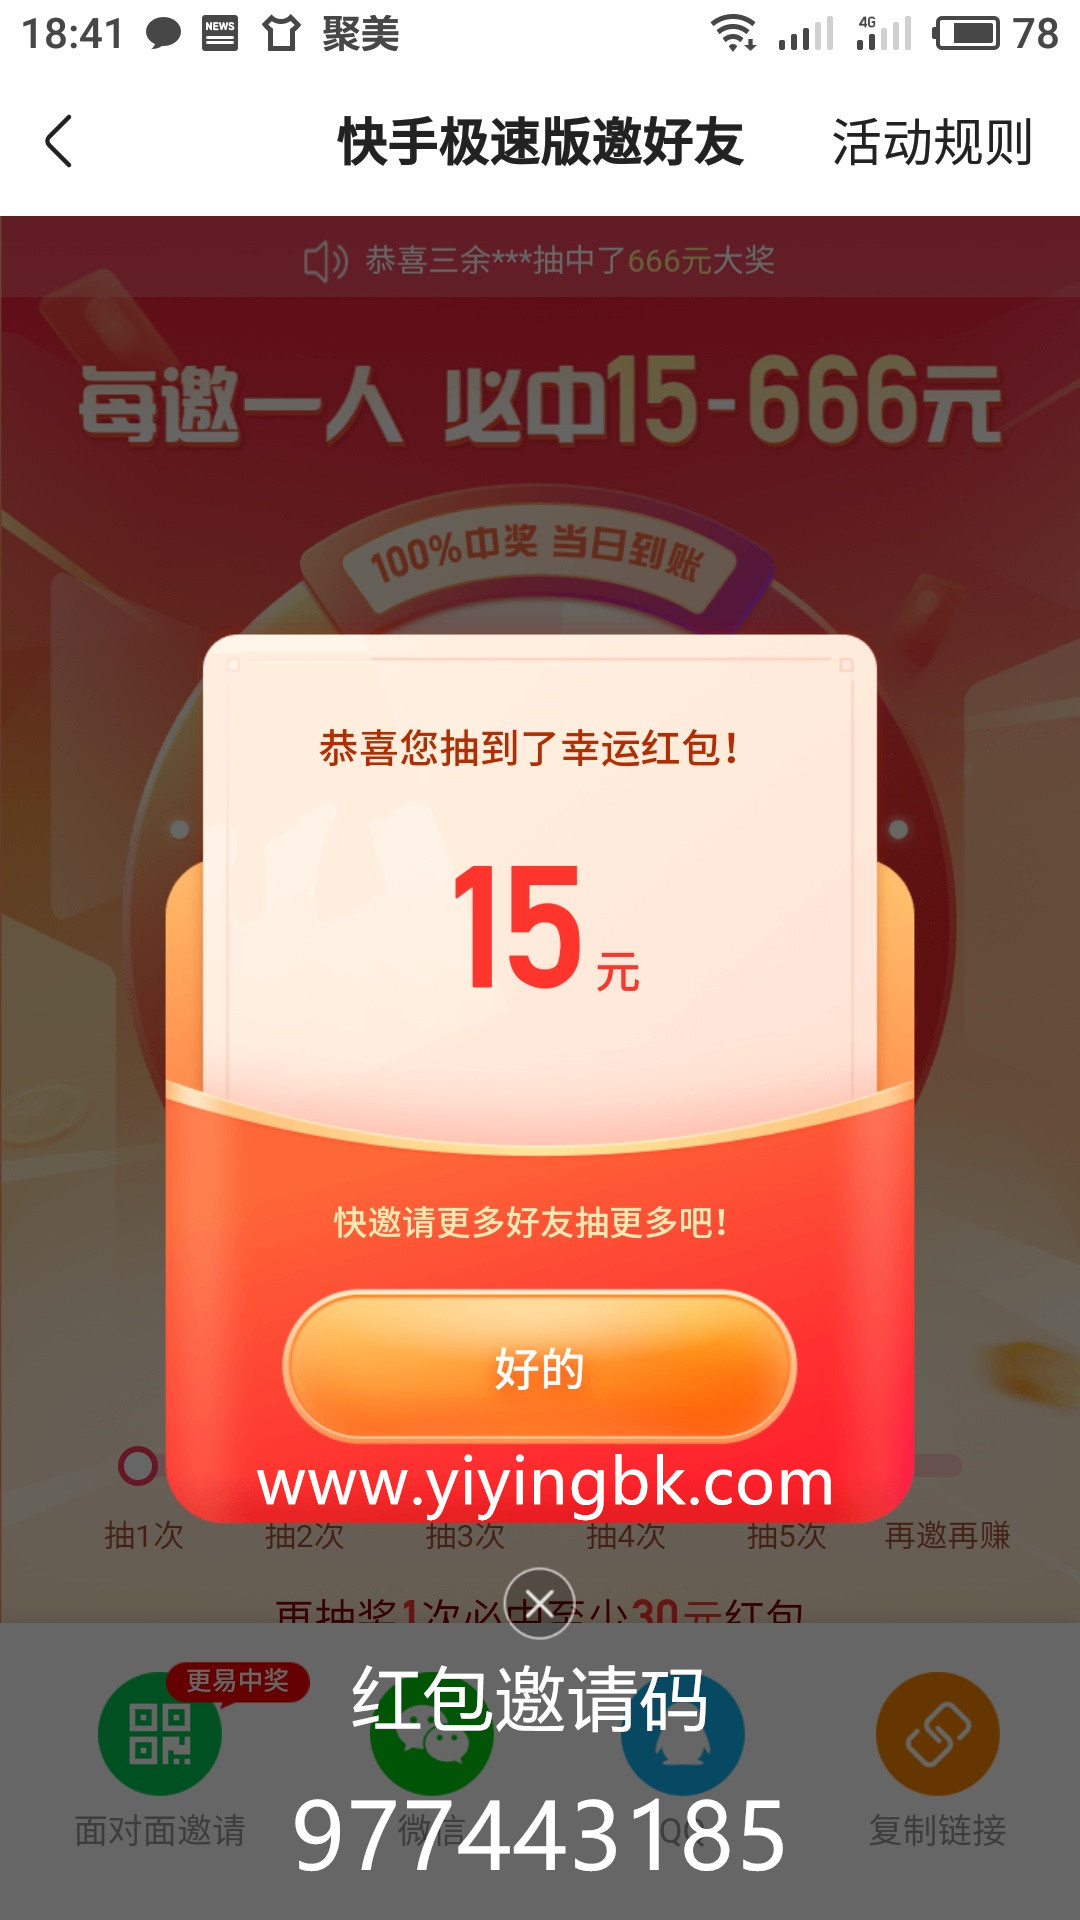 快手极速版抽到15元红包，直接提现微信和支付宝秒到账。www.yiyingbk.com